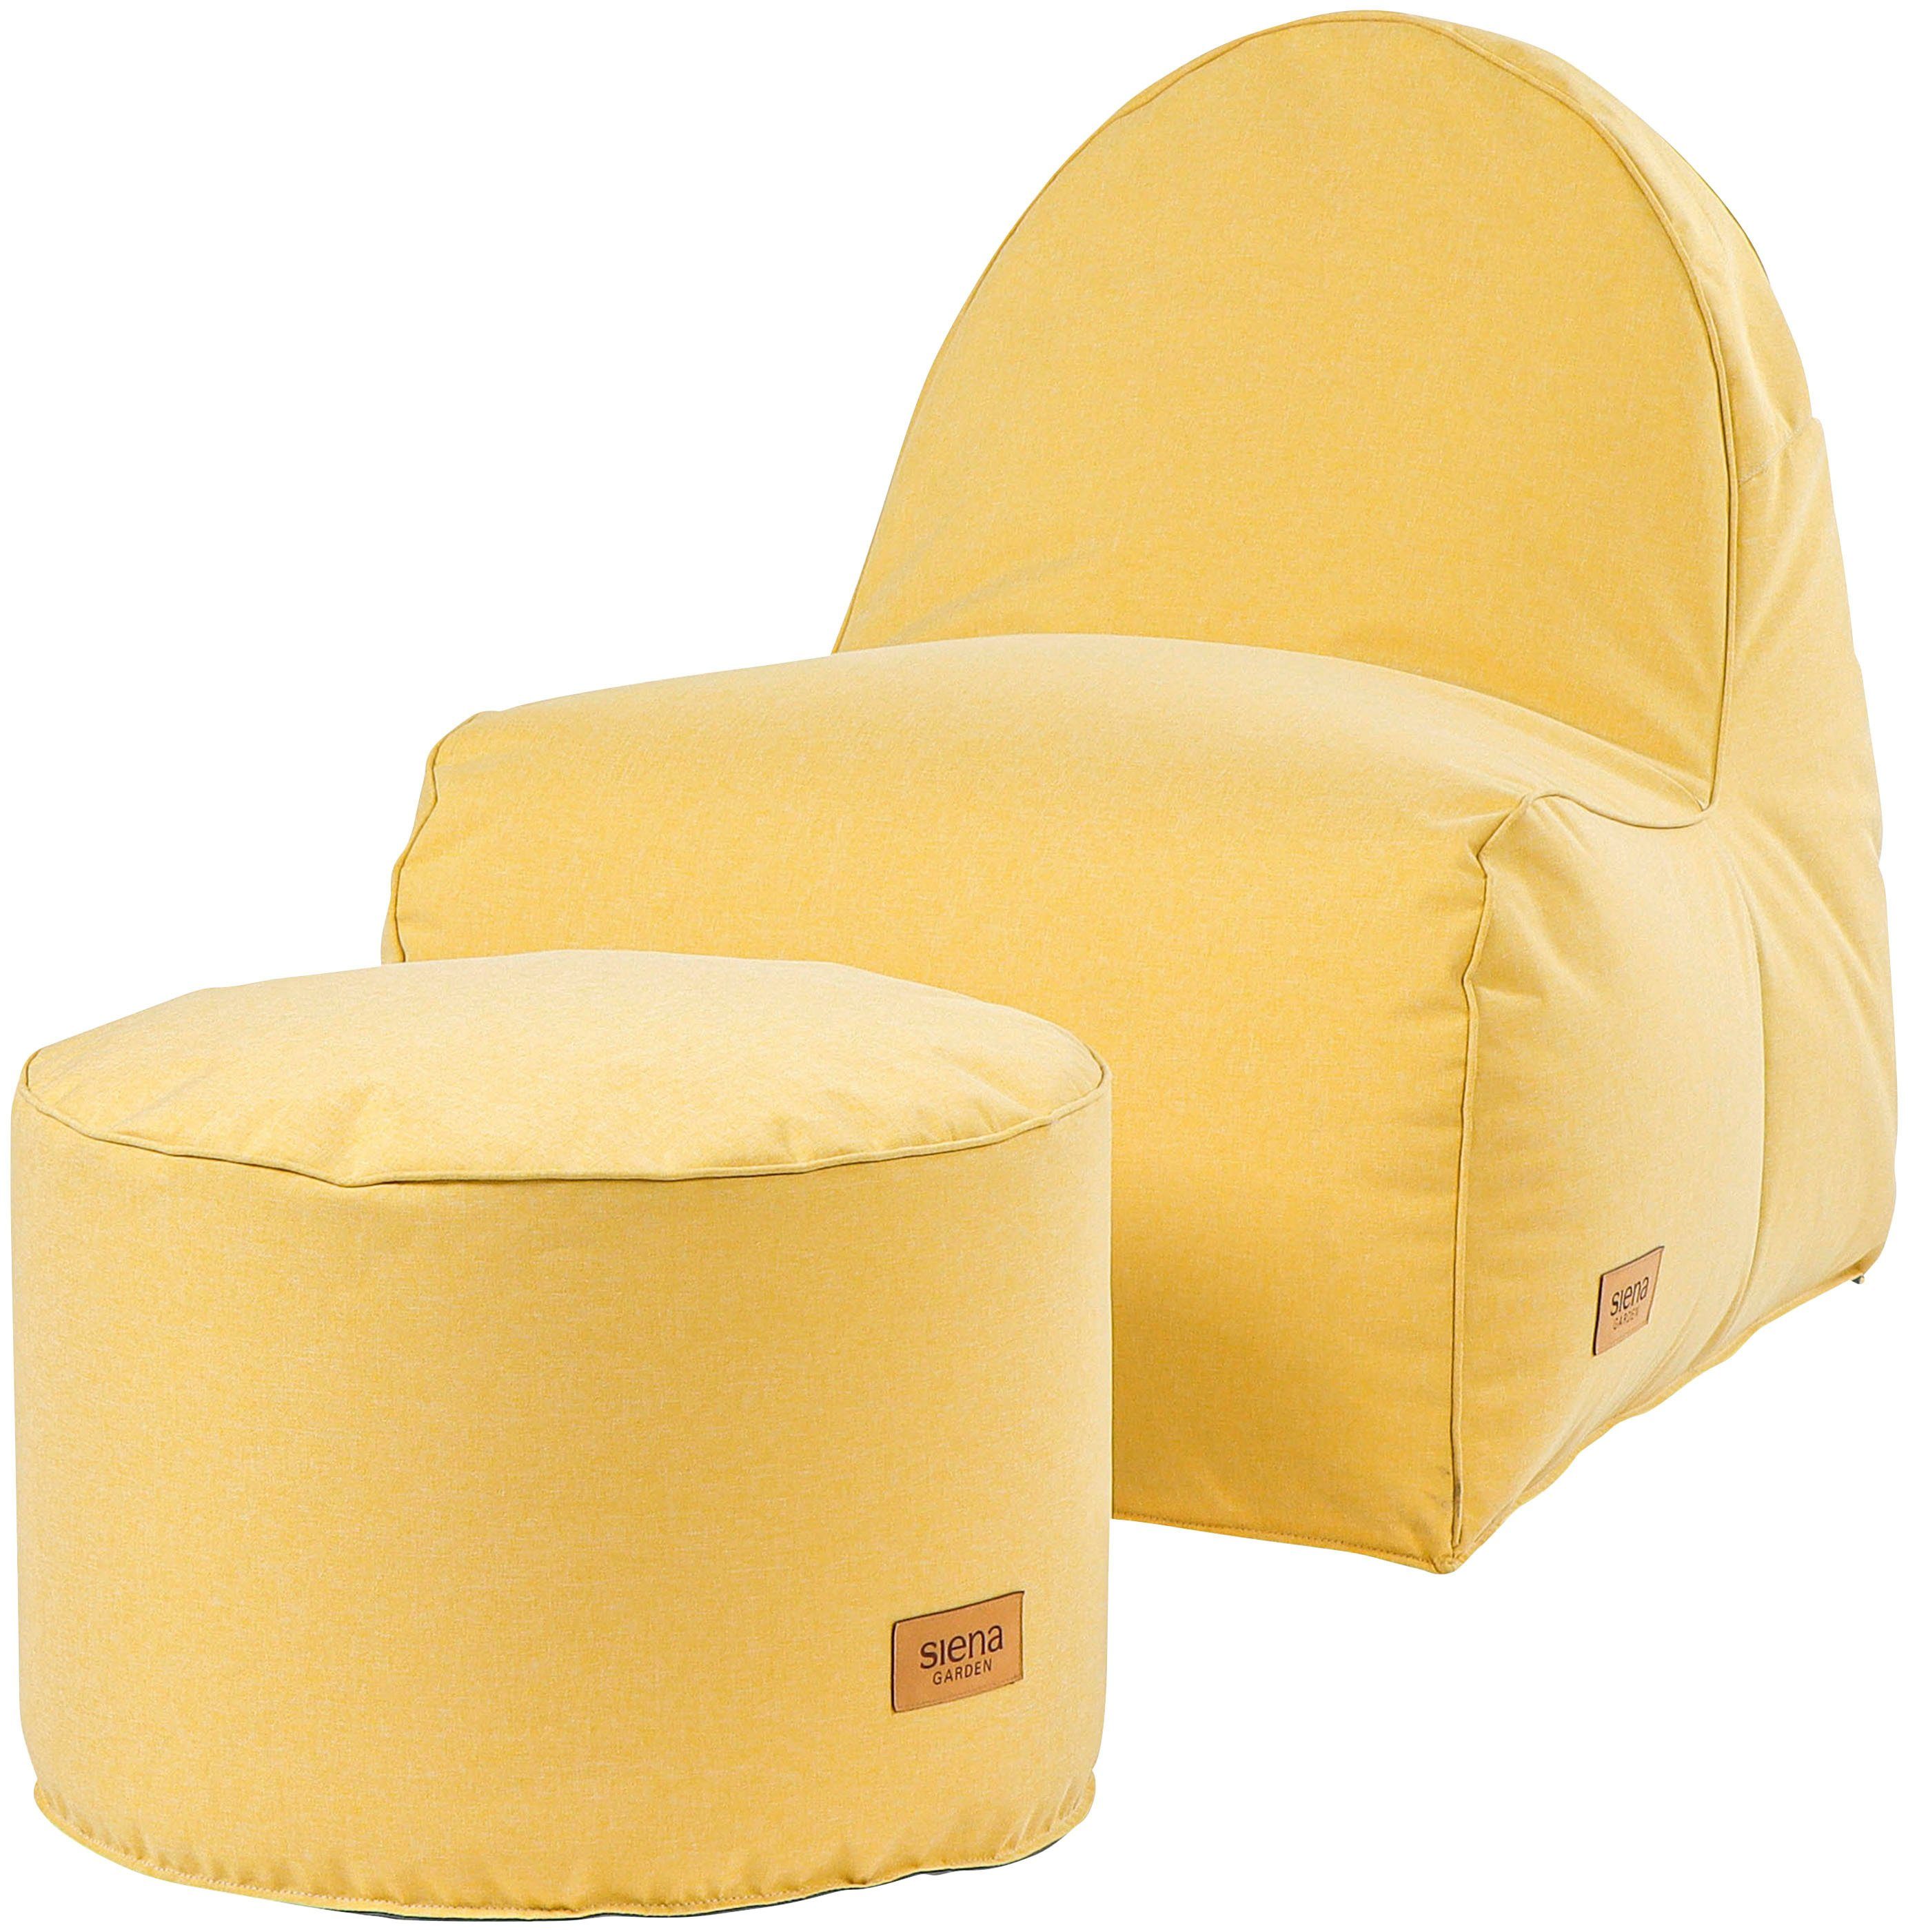 Indoor Siena Garden Ø60cm*H40cm, in Round verschiedenen Sitzsack lemonjuice Farben Outdoor, erhältlich & FLOW.U